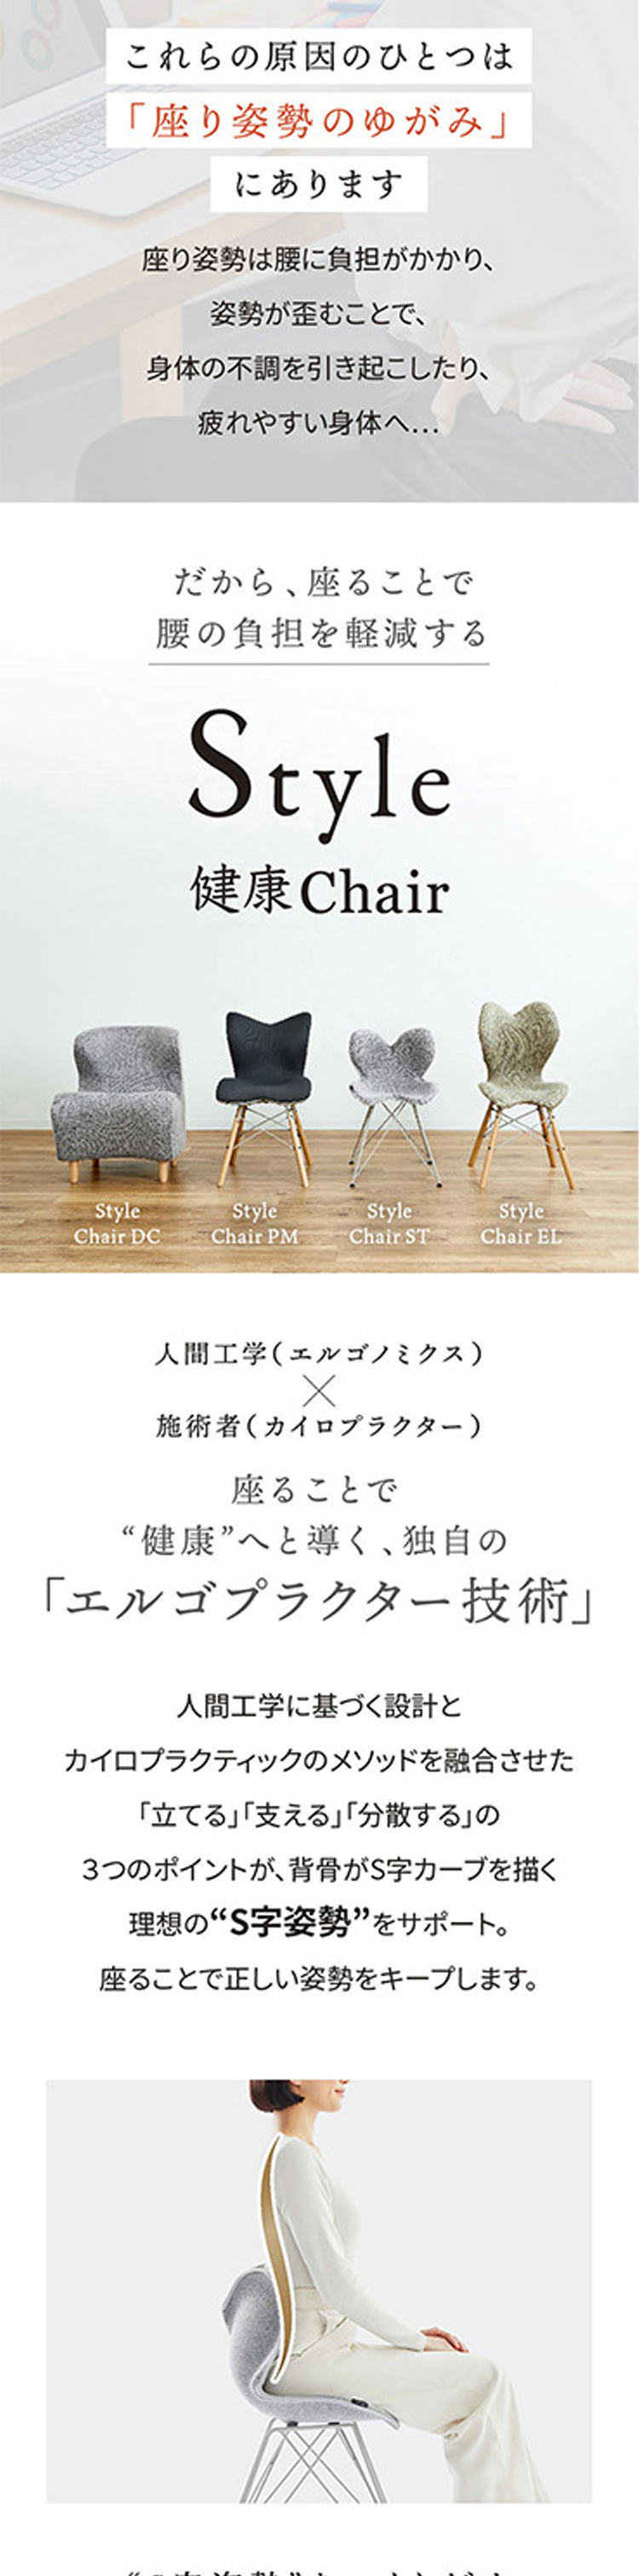 MTG Style Chair PM ブラック YS-AZ-03A 【破格値下げ】 - xl-triathlon.fr